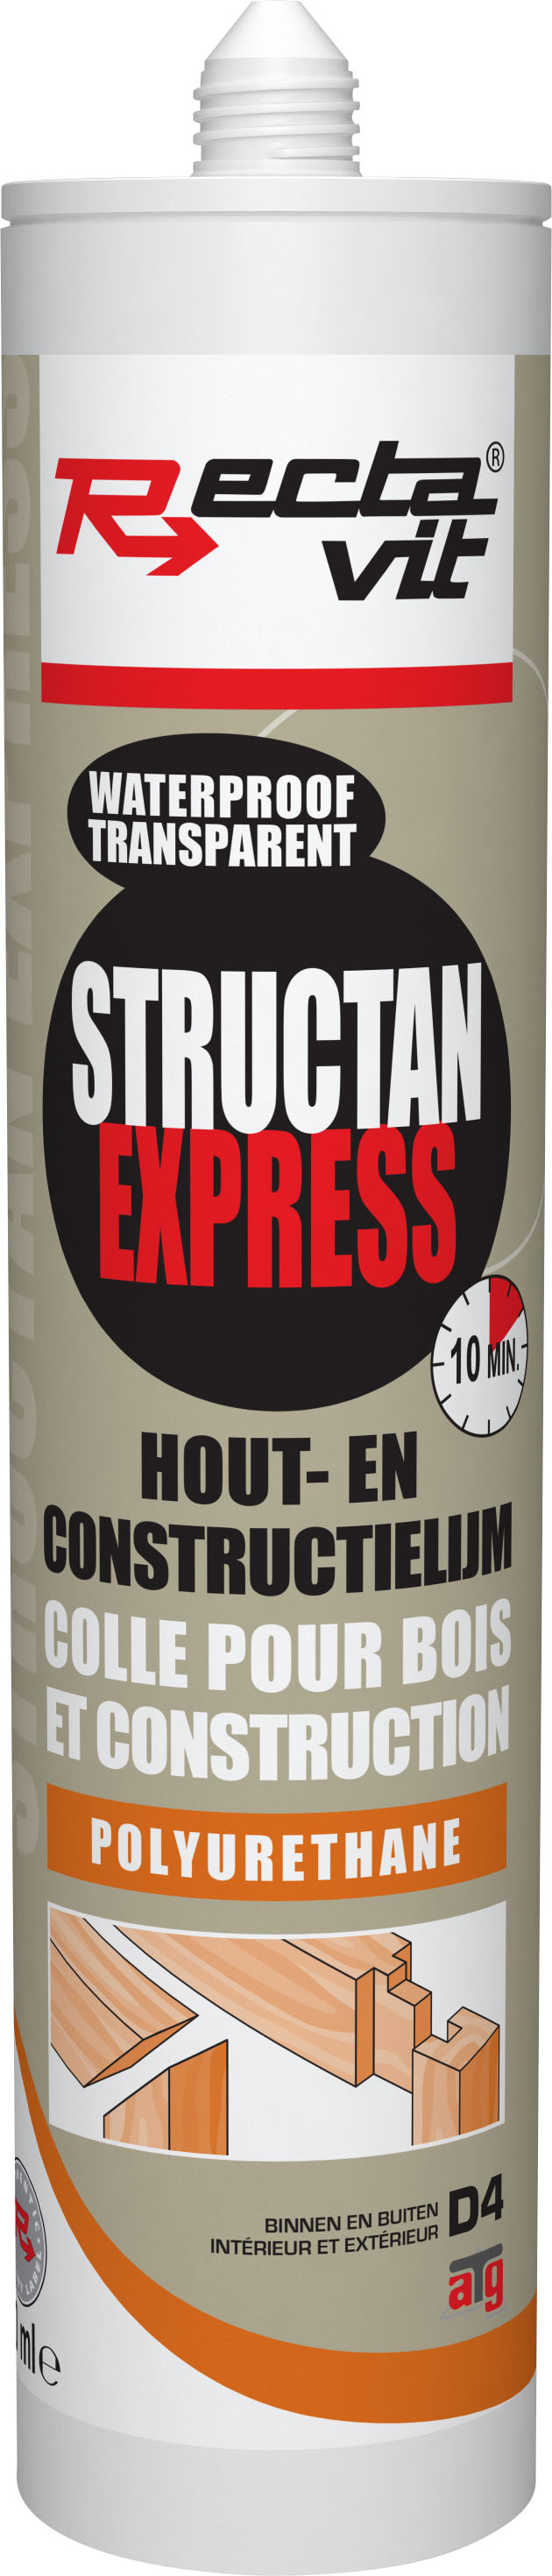 structan express houtlijm